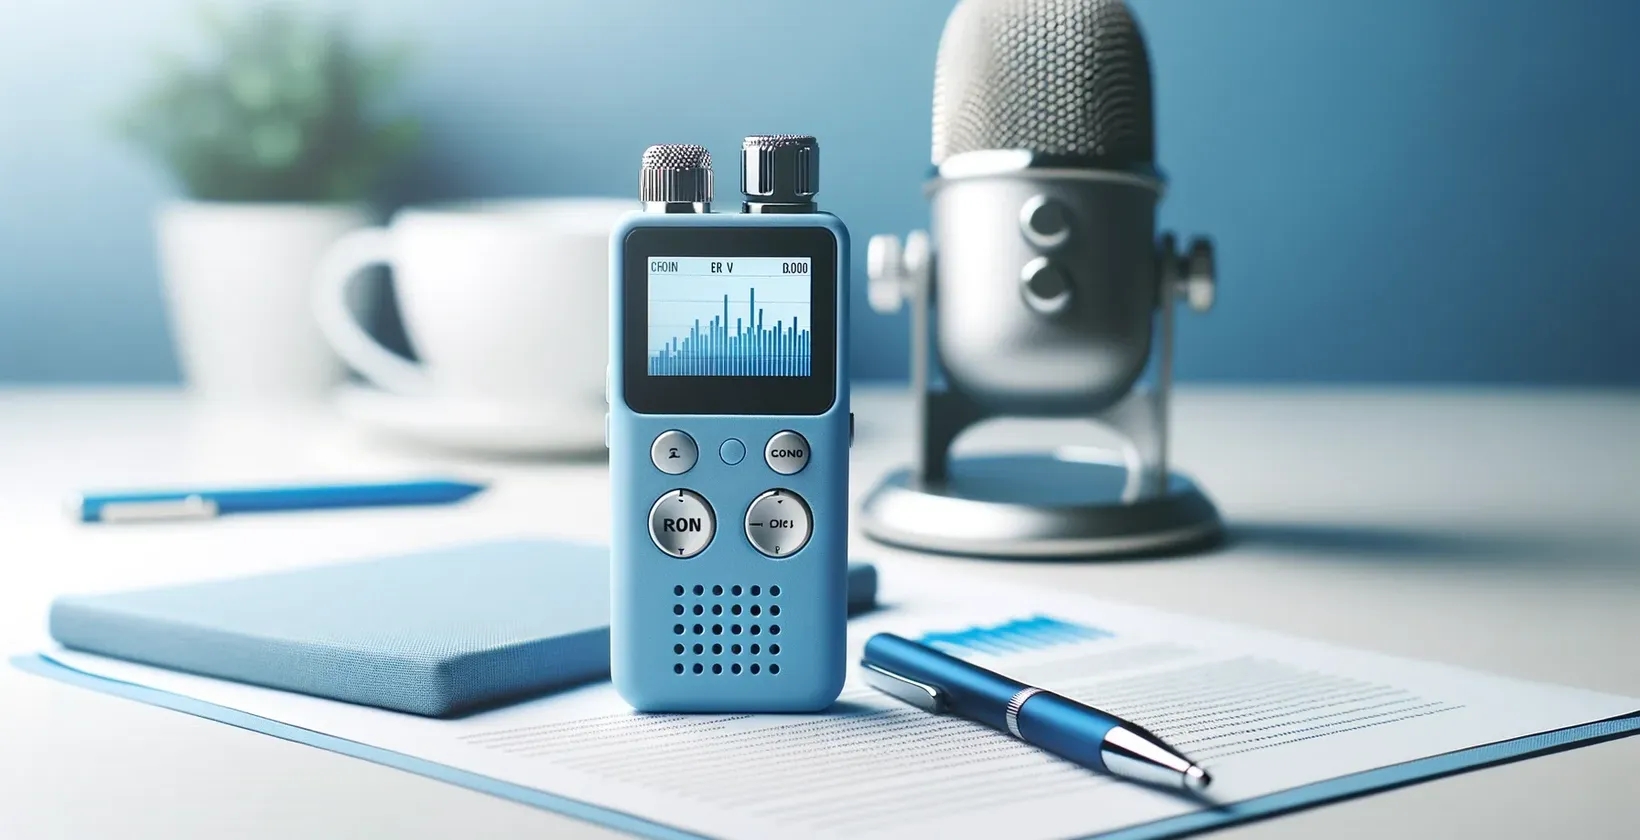 As ferramentas de transcrição de entrevistas incluem um gravador de voz digital, um microfone e um documento aberto com notebook.